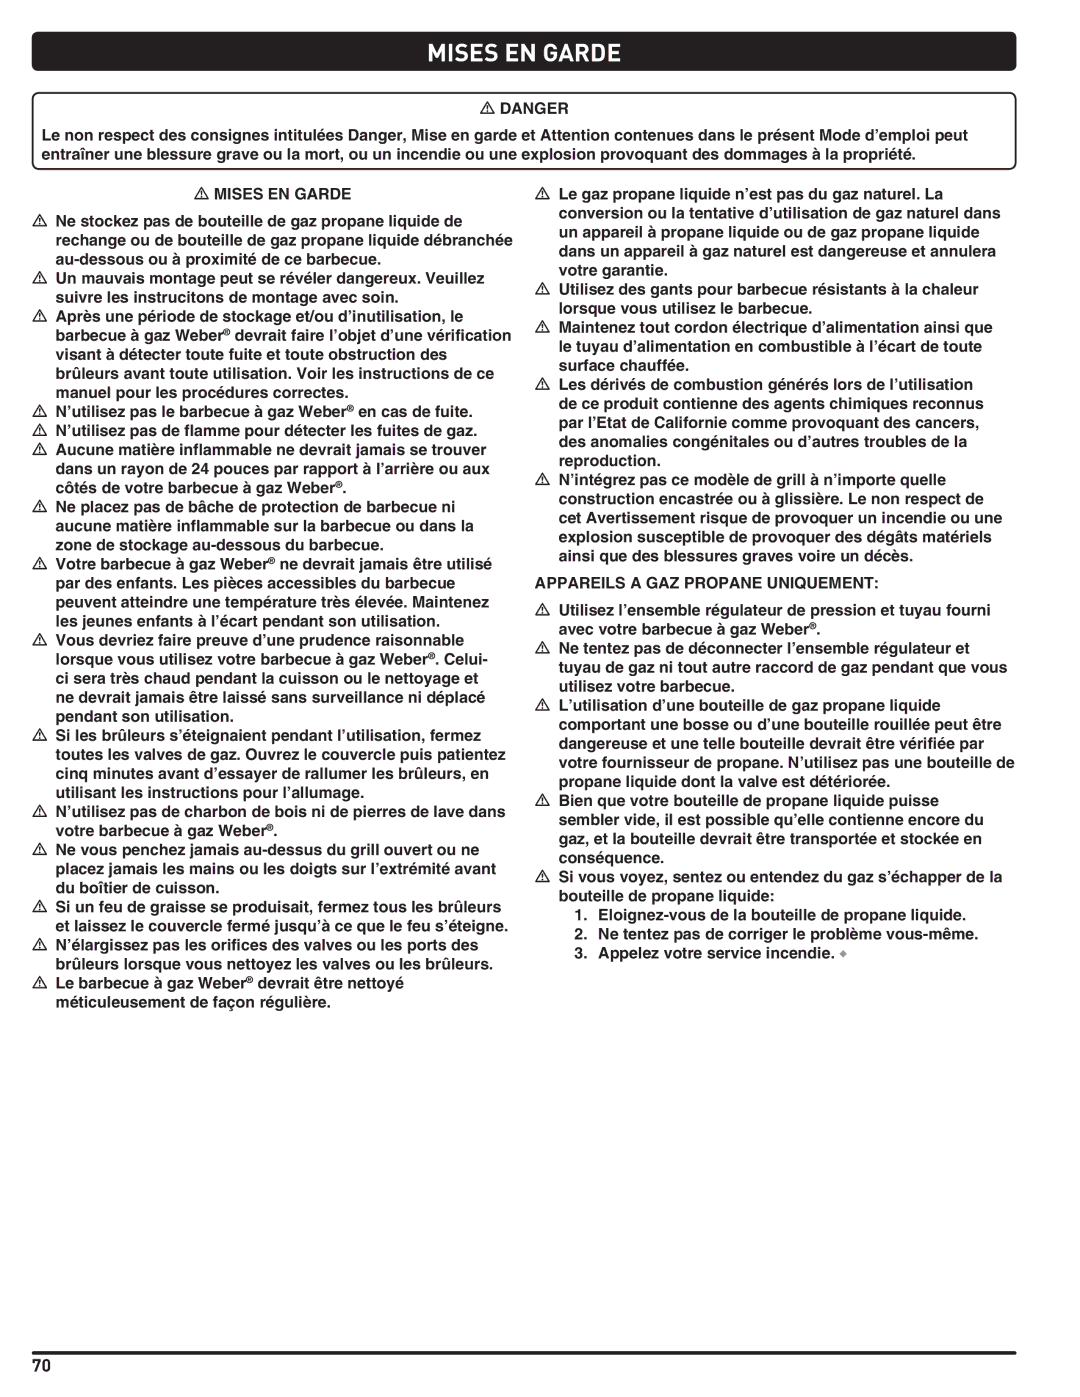 Weber Weber, 660- LP manual Mises EN Garde, Appareils a GAZ Propane Uniquement 